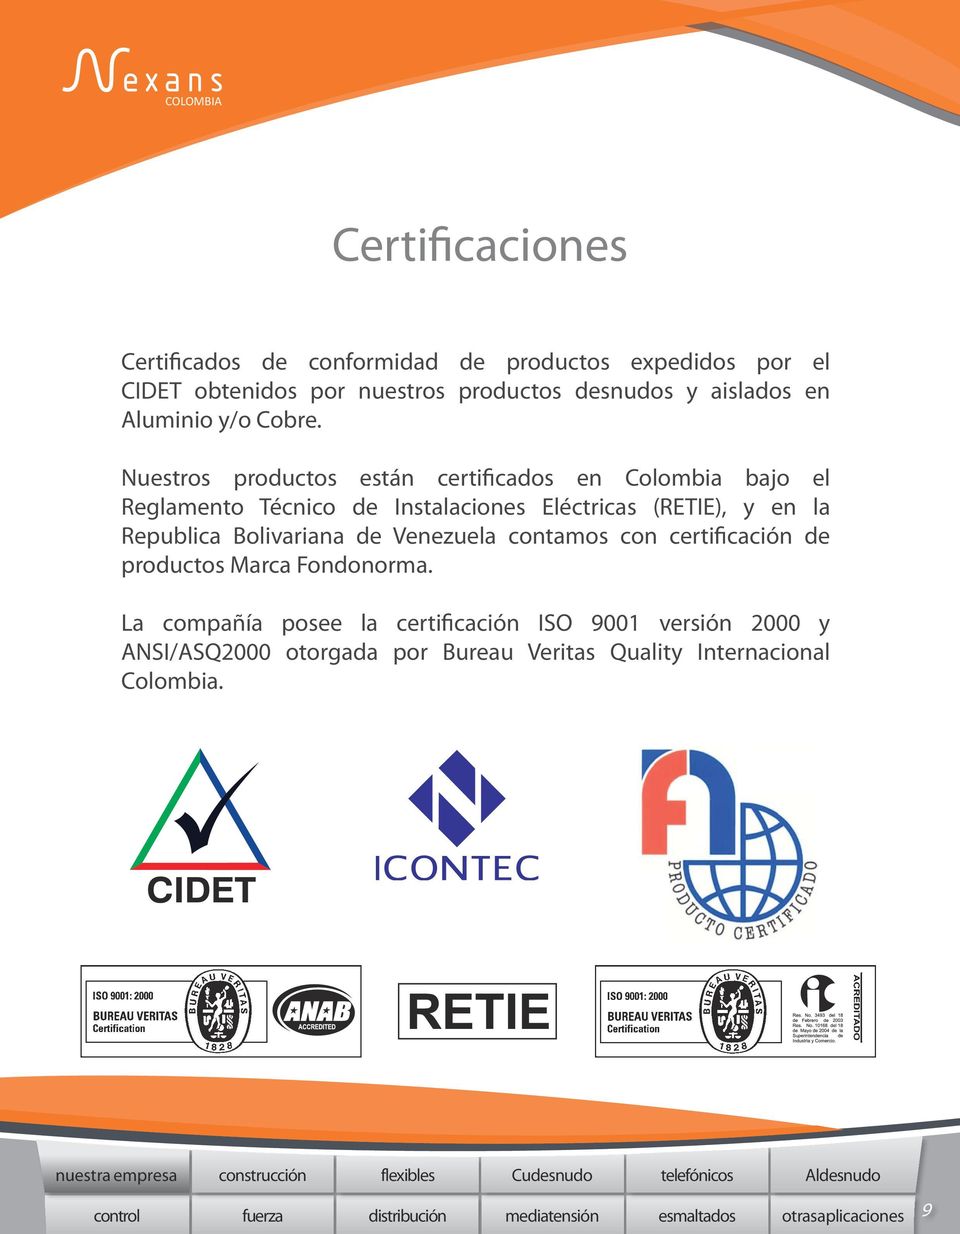 Nuestros productos están certificados en Colombia bajo el Reglamento Técnico de Instalaciones Eléctricas (RETIE), y en la